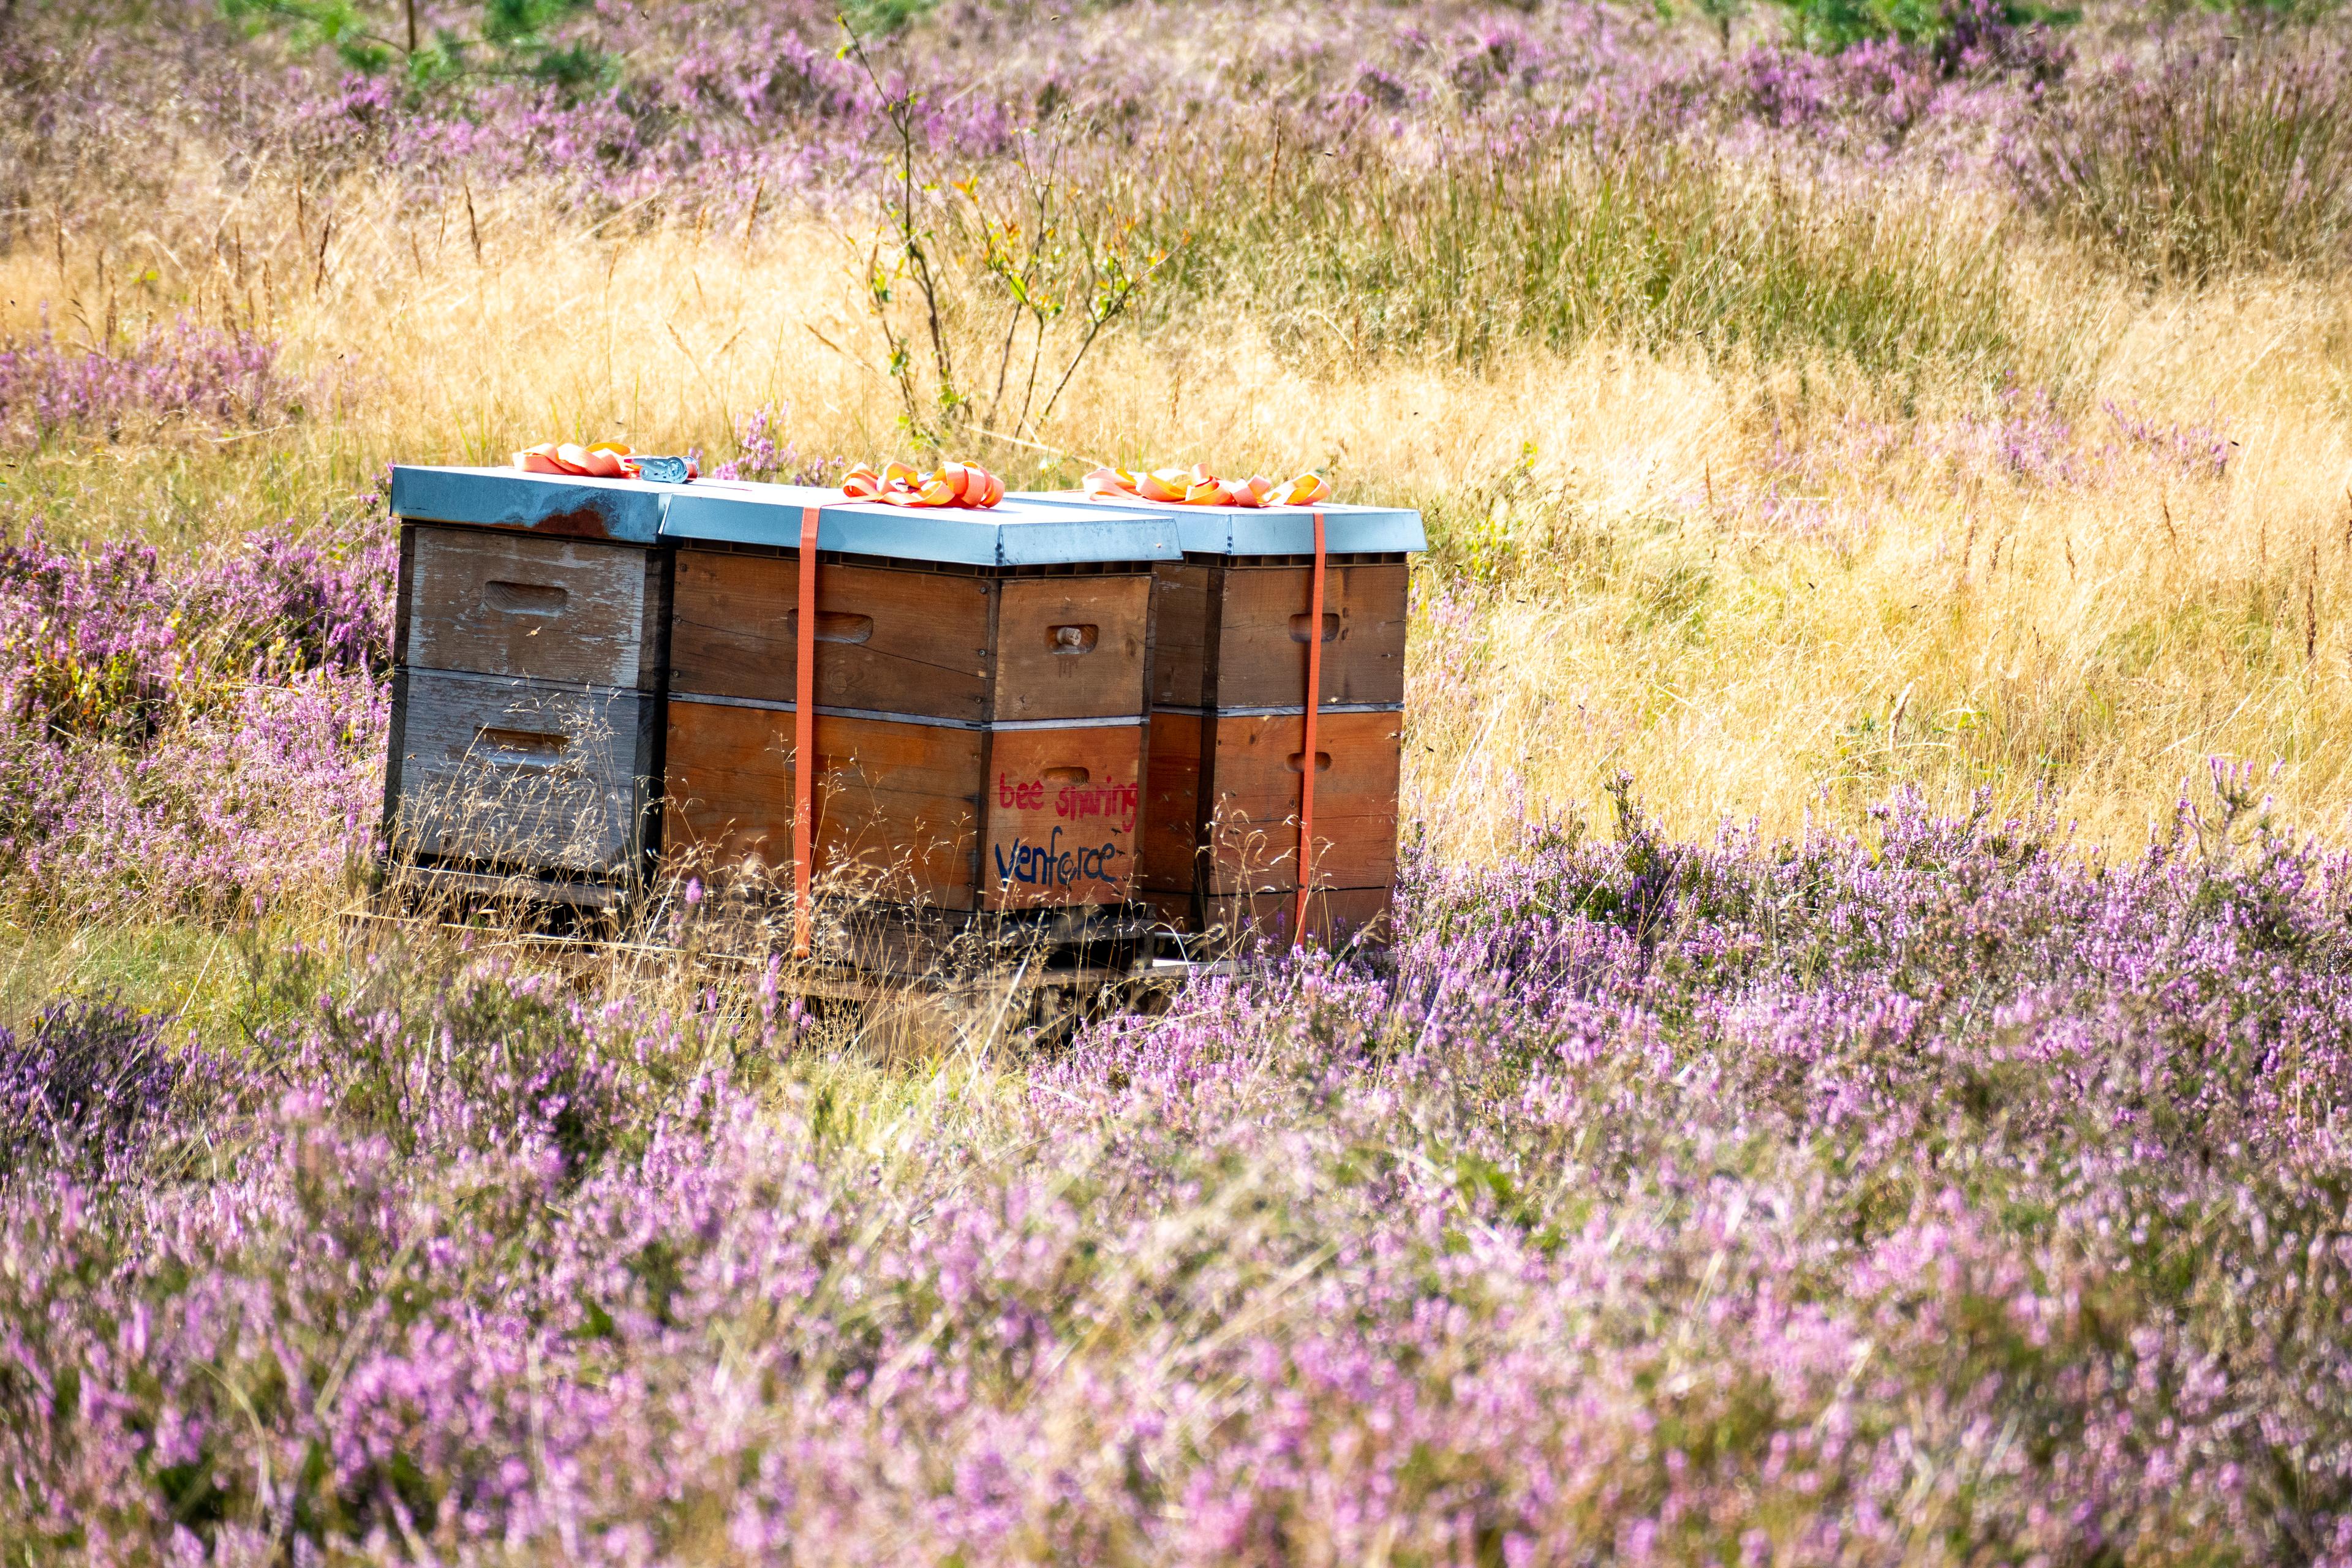 Bienenkästen inmitten der blühenden Wehlener Heide